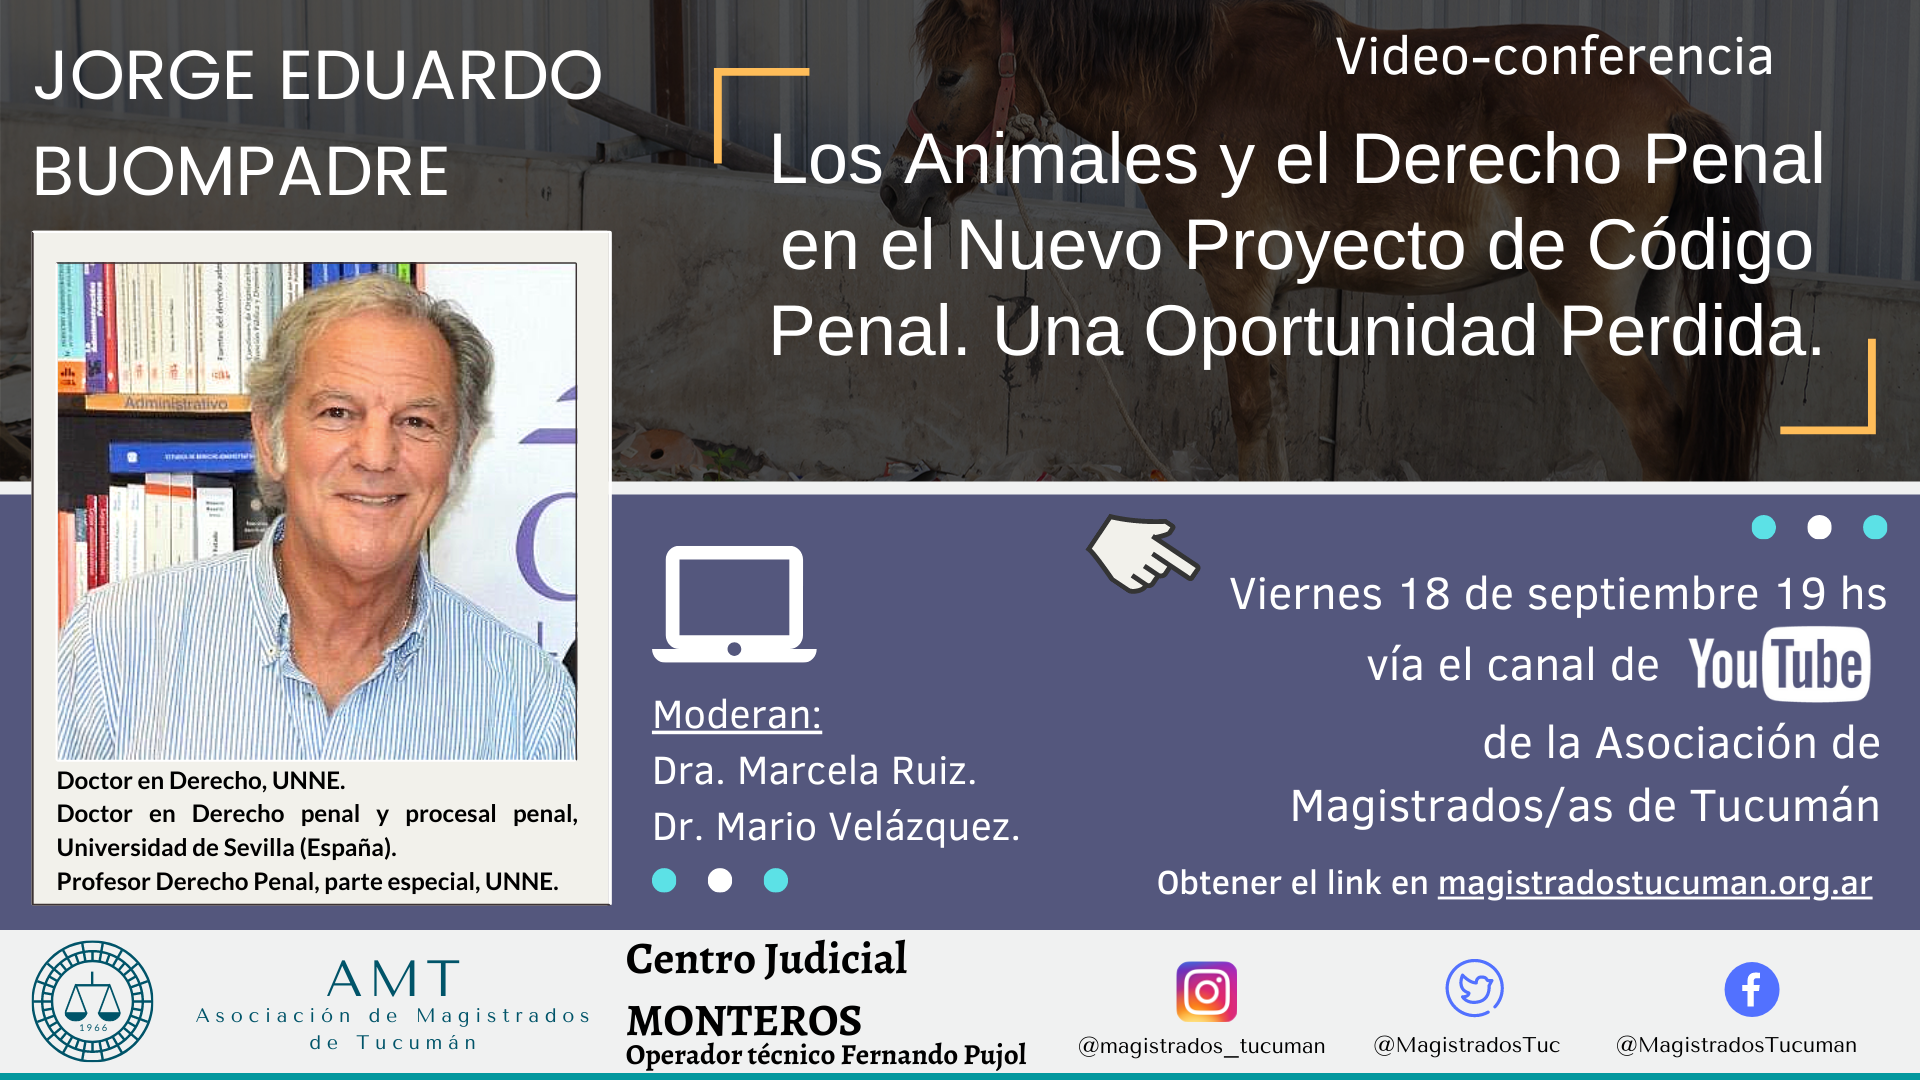 Vuelva a ver la conferencia de Jorge Eduardo Buompadre «Los Animales y el Derecho Penal en el Nuevo Proyecto de Código Penal. Una Oportunidad Perdida»